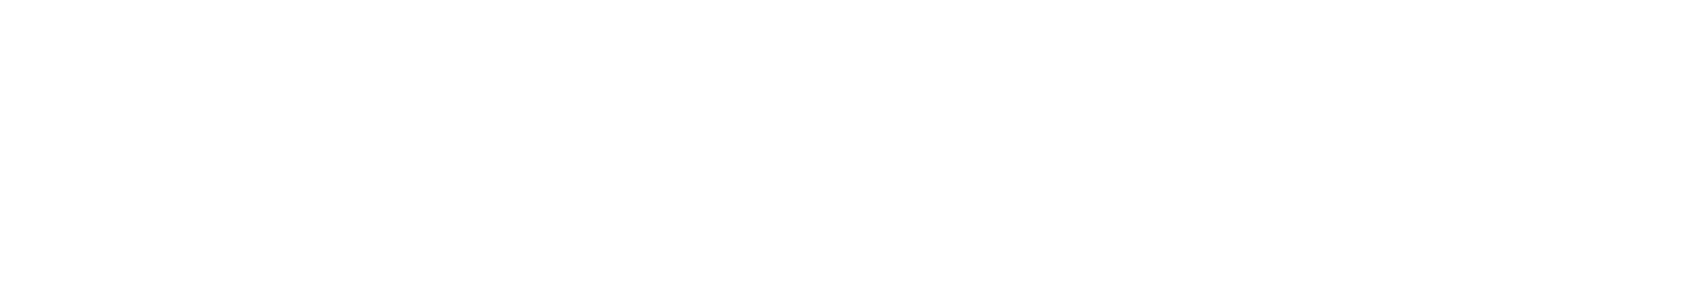 MillerKnoll logo large for dark backgrounds (transparent PNG)